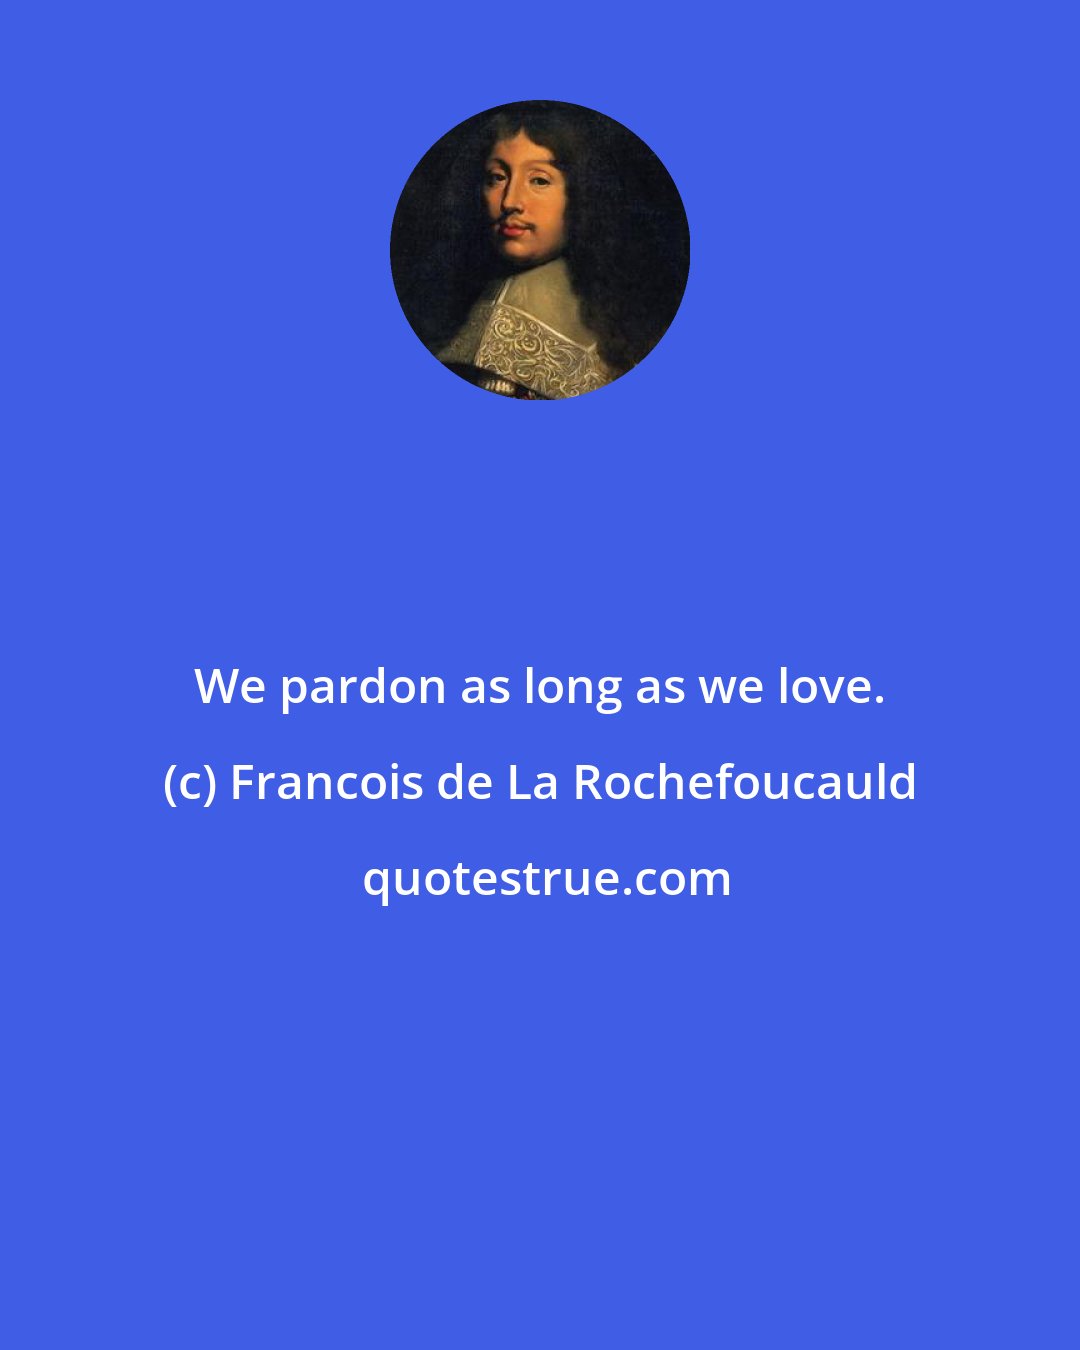 Francois de La Rochefoucauld: We pardon as long as we love.